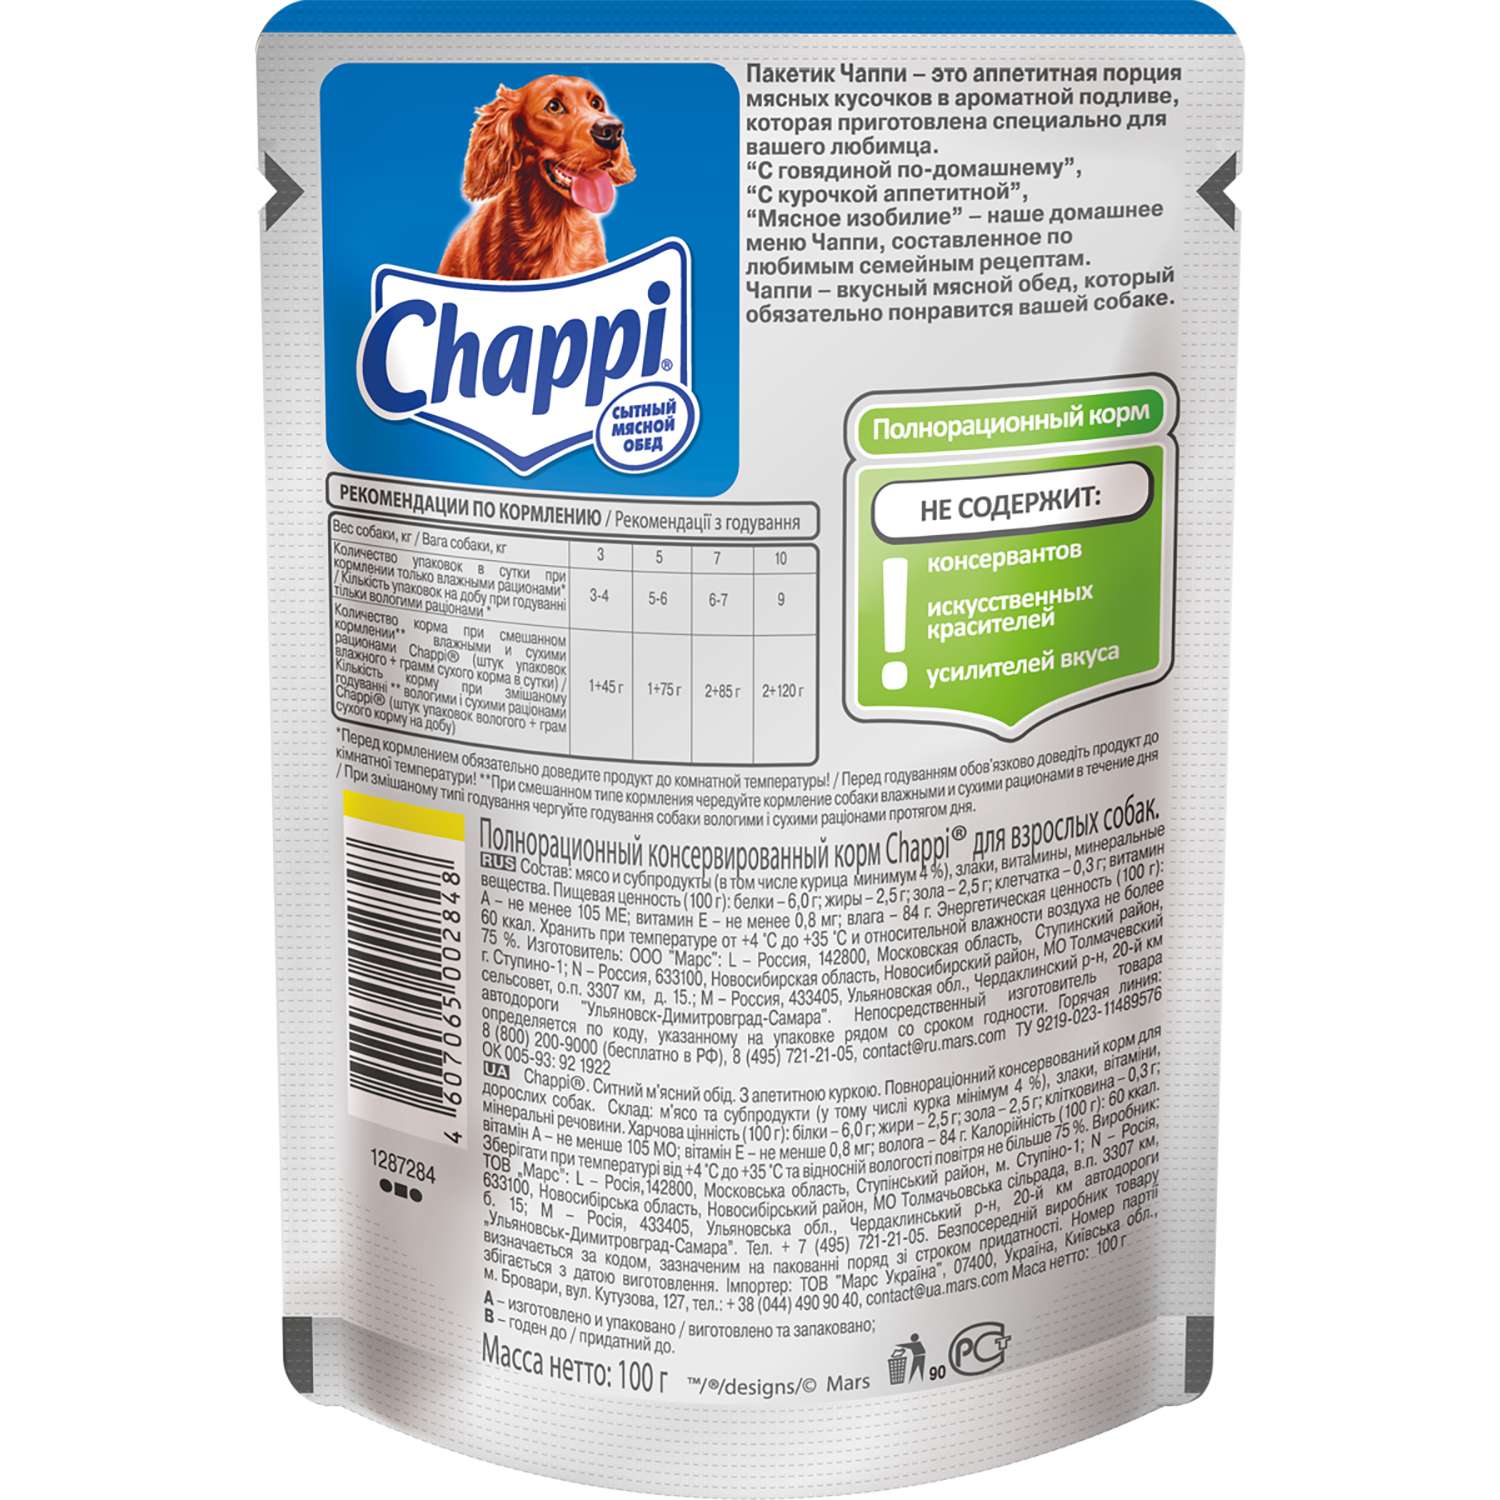 Корм для собак Chappi 100г аппетитная курочка пауч - фото 2